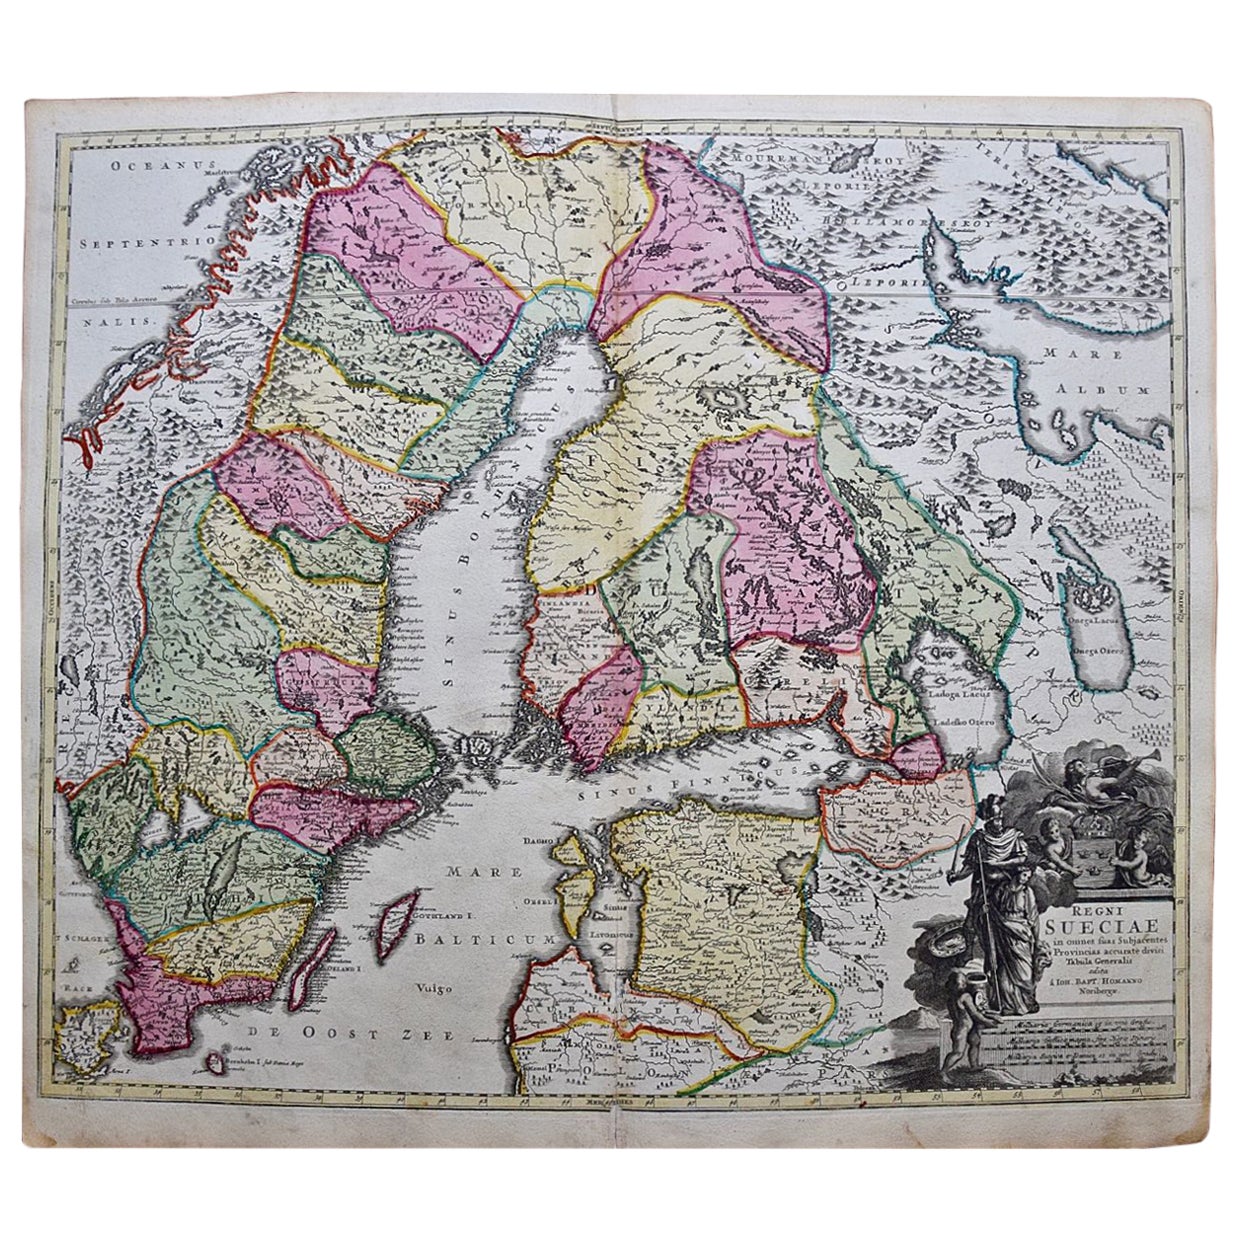 Skandinavische Skandinavien und Portionen Osteuropas: Handkolorierte Homann-Karte aus dem 18. Jahrhundert